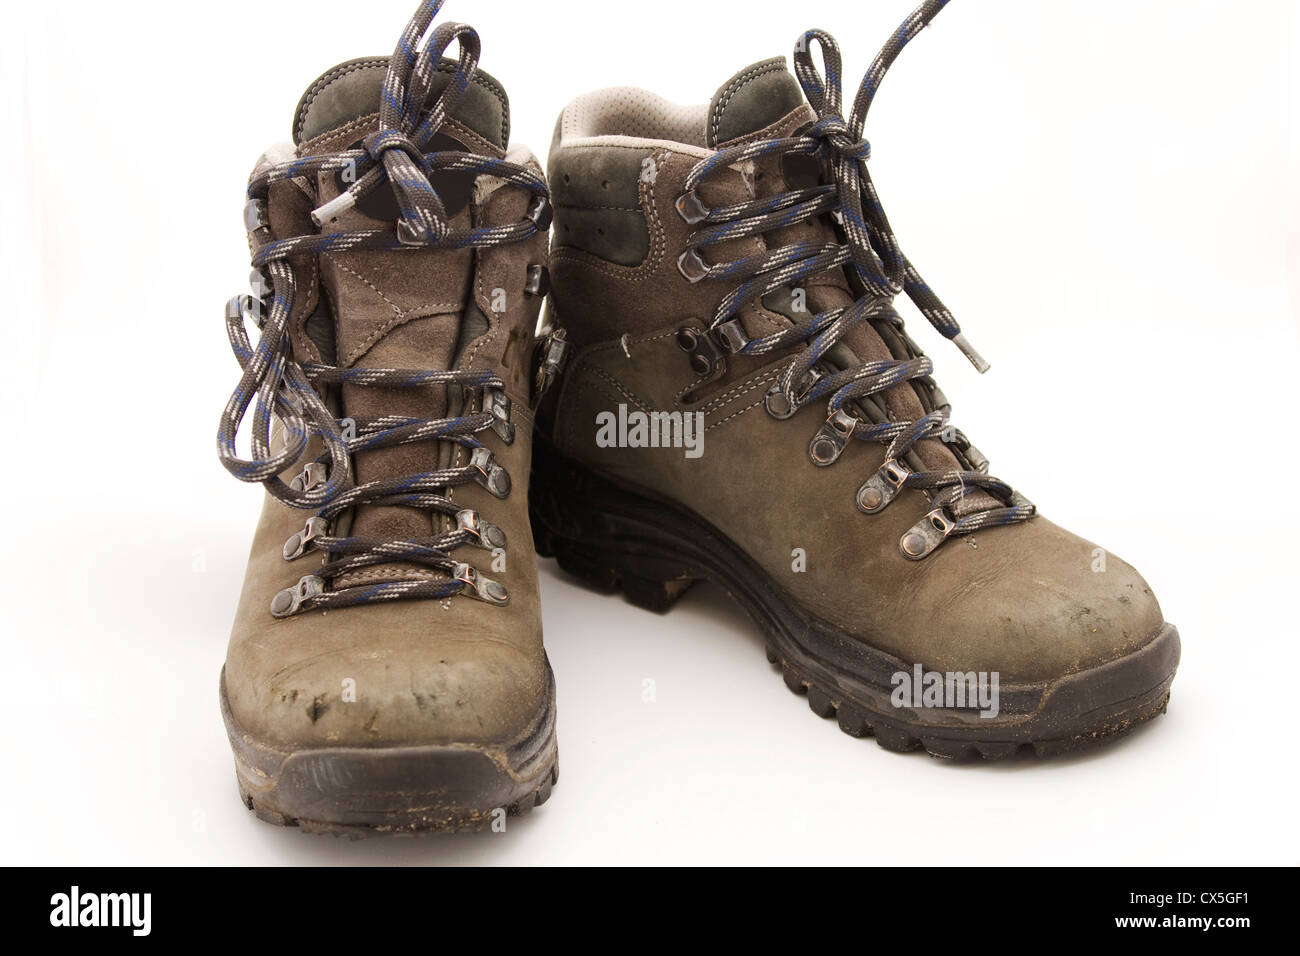 sturdy walking boots